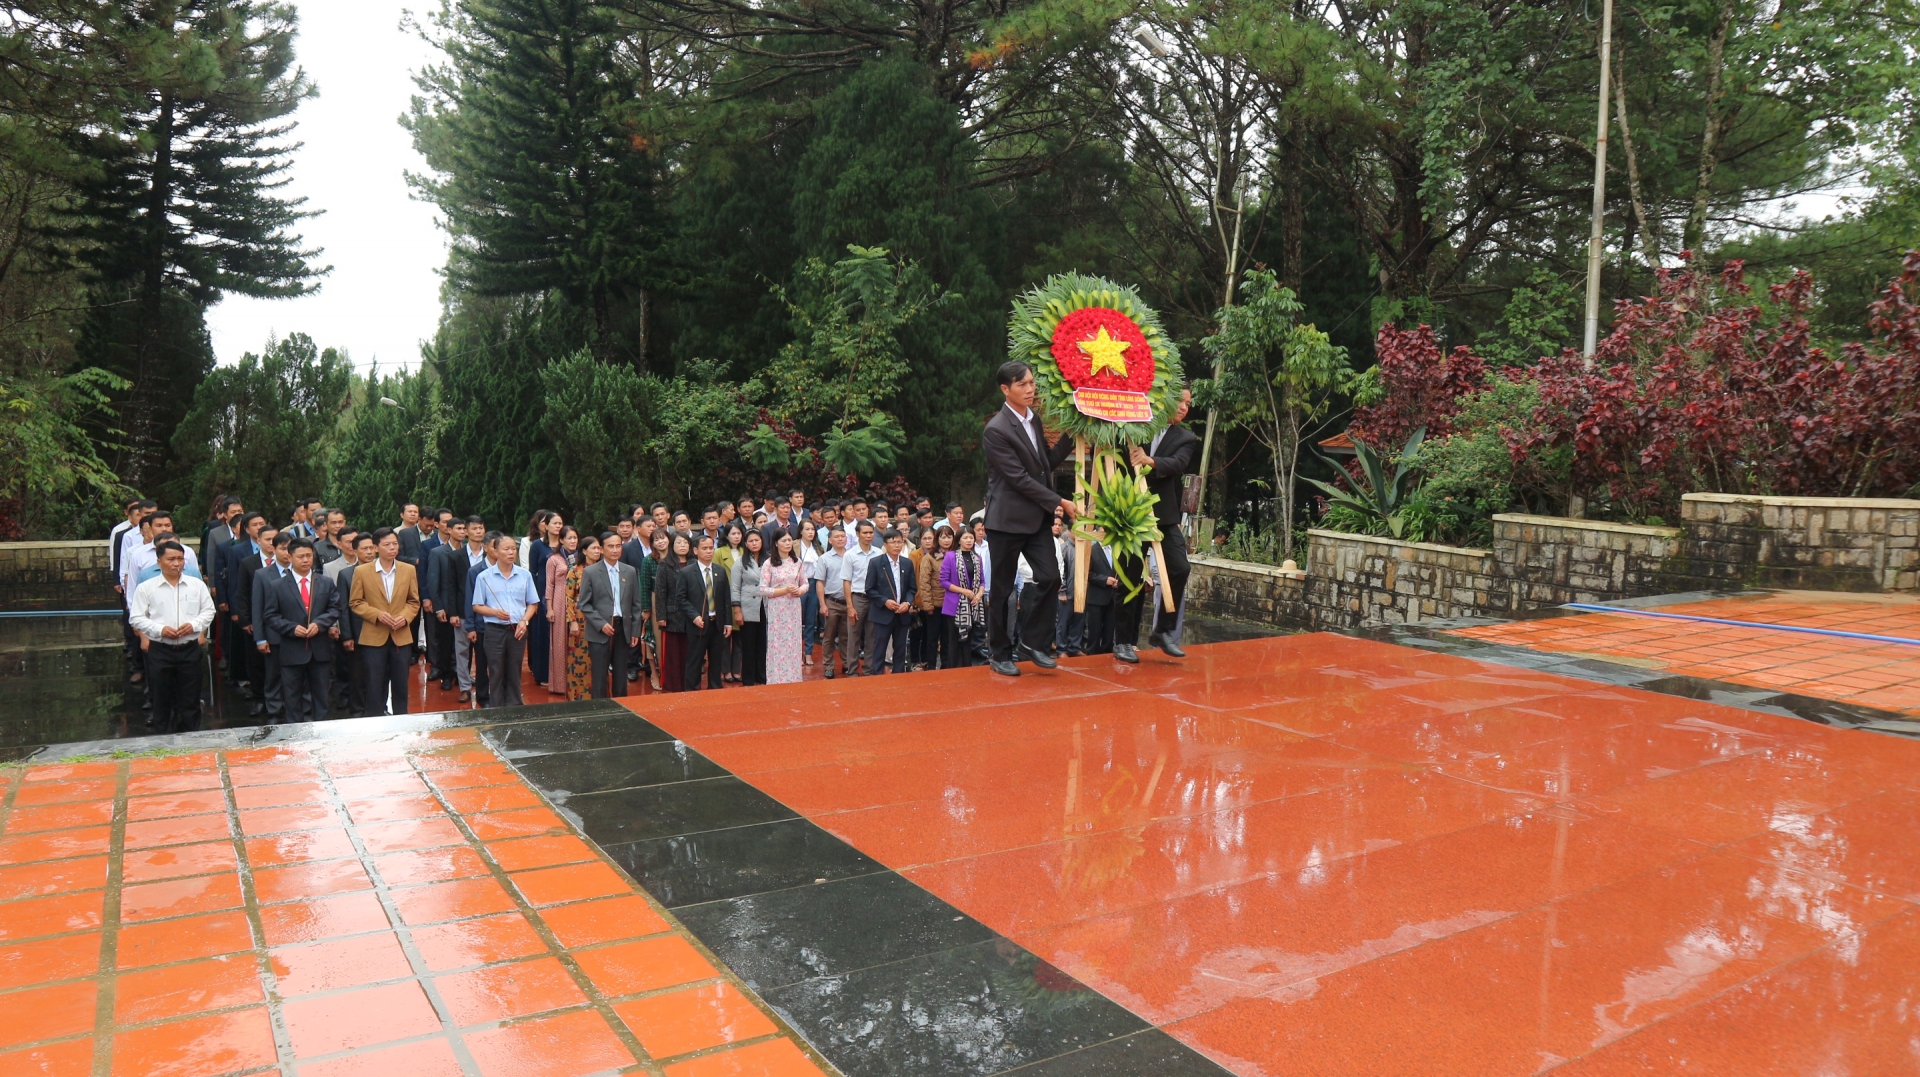 Dâng hoa tưởng nhớ Chủ tịch Hồ Chí Minh, tưởng nhớ anh hùng, liệt sỹ đã hy sinh